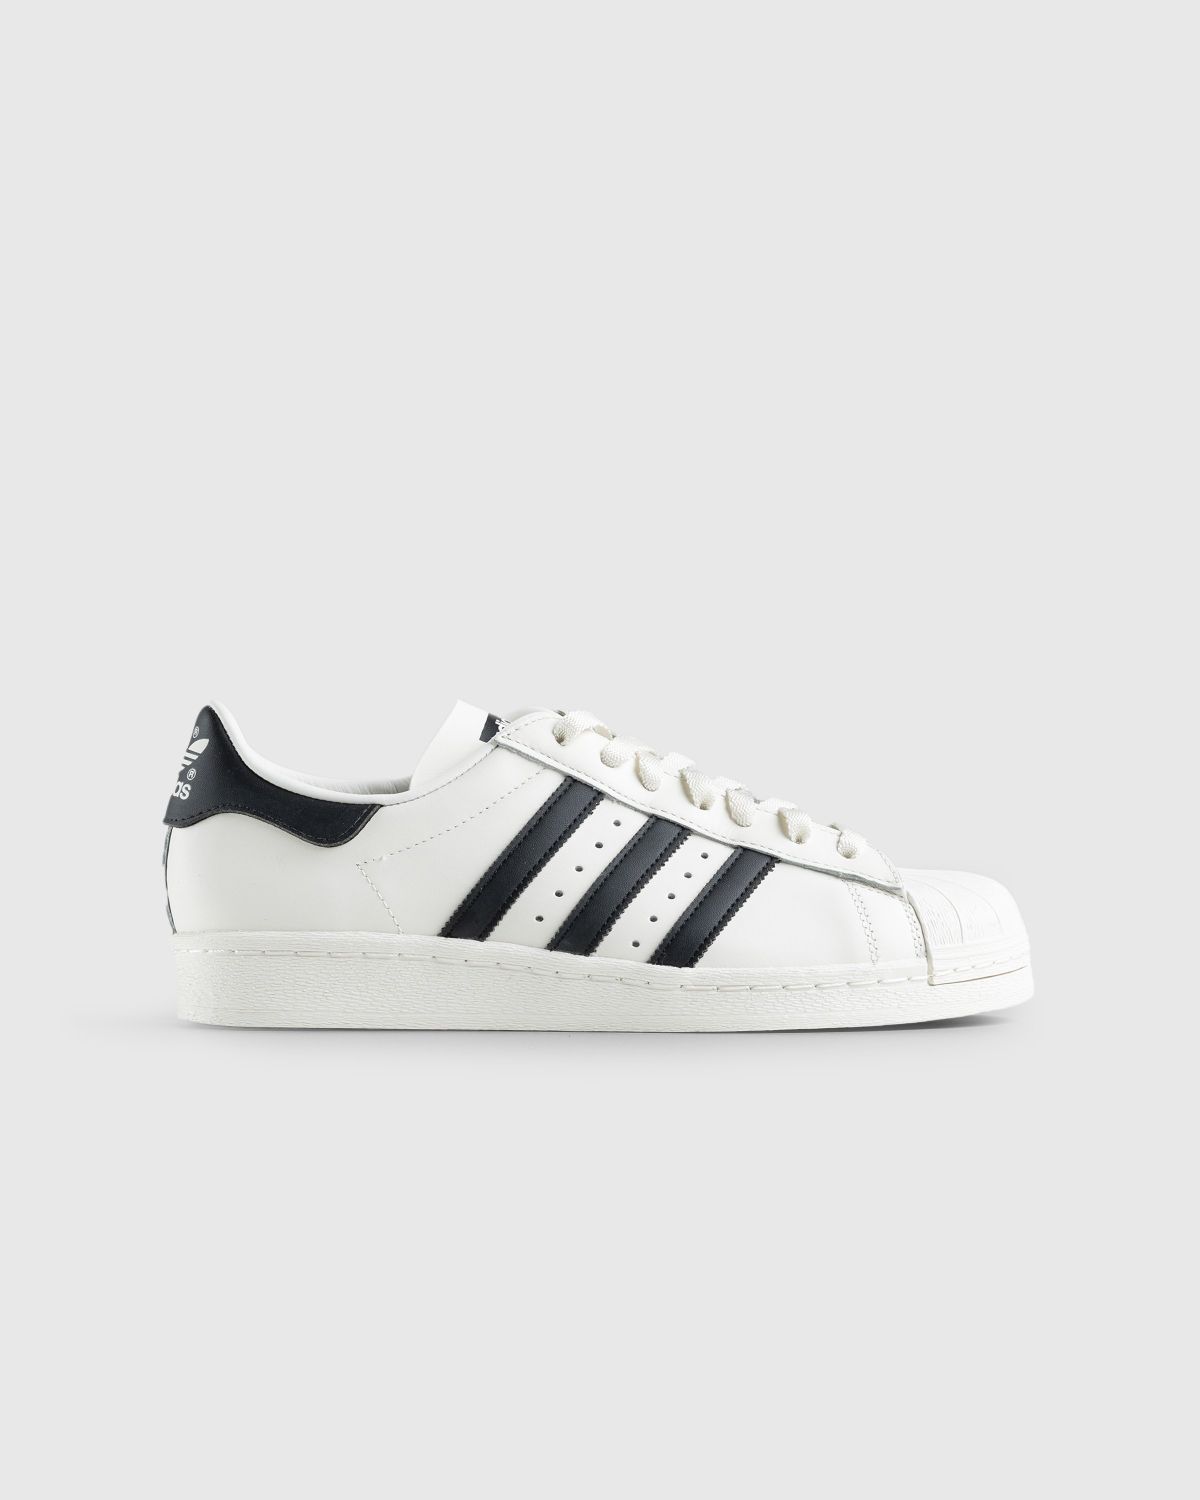 Adidas – Superstar 82 White/Black | Highsnobiety Shop